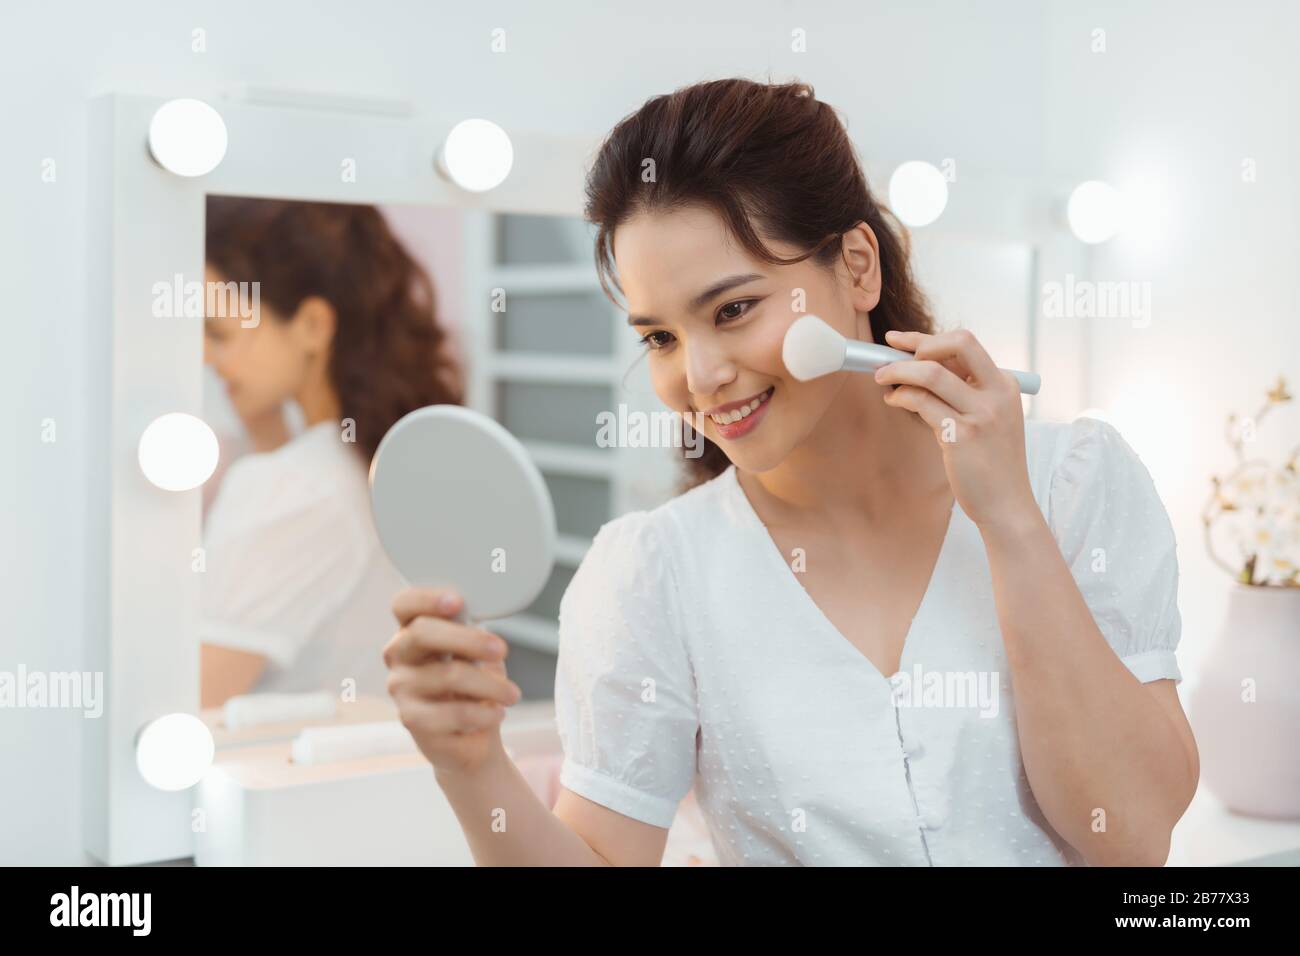 Modelo de belleza niña aplicando maquillaje y sonriendo. Hermosa mujer joven mirando en el espejo y aplicando cosméticos con un gran cepillo. Foto de stock